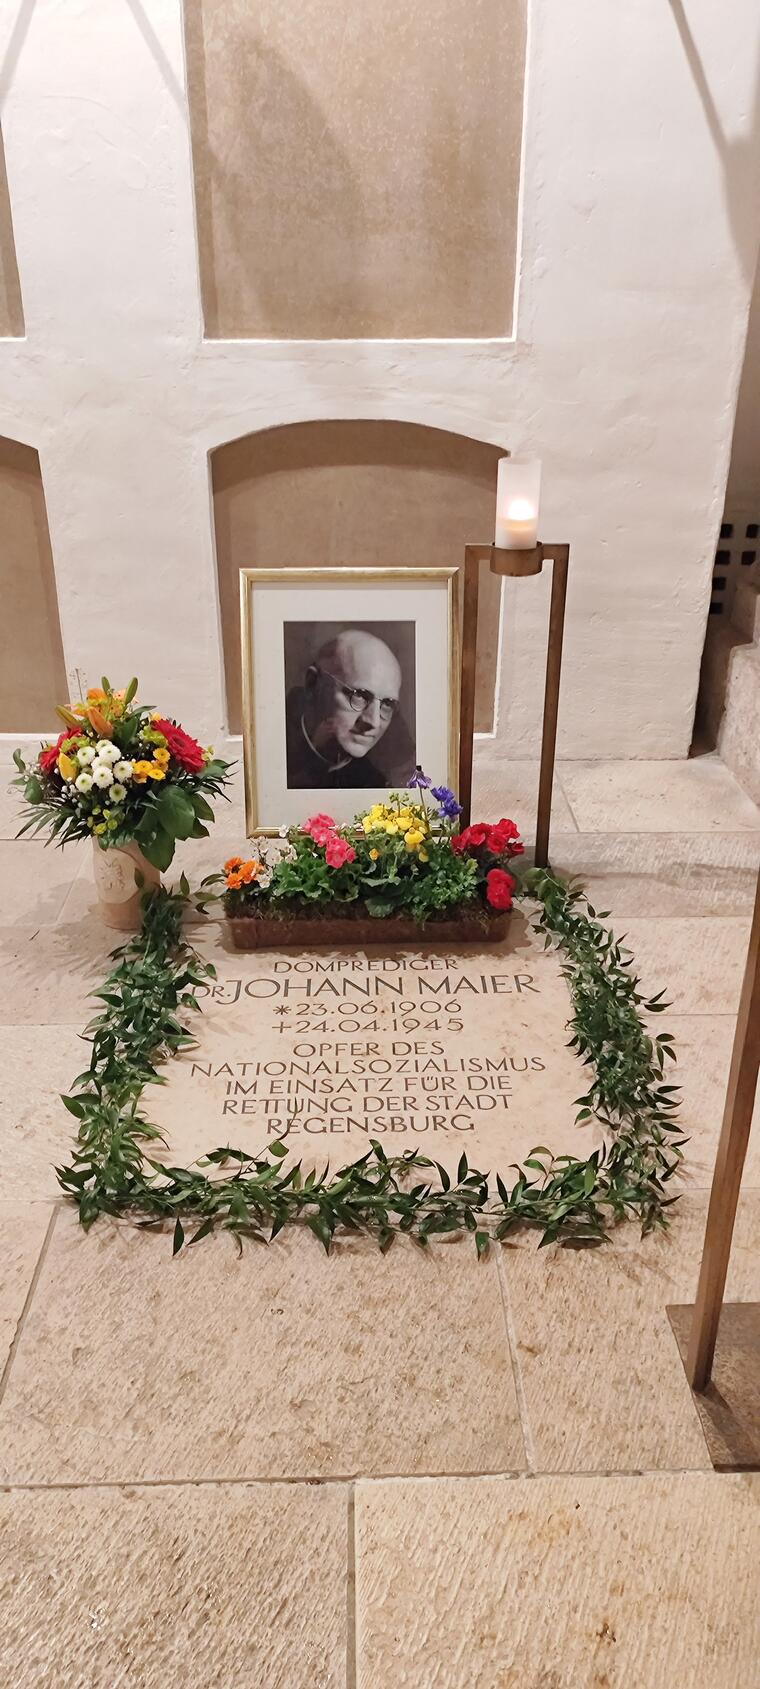 Grablege mit Bild von Domprediger Dr. Johann Maier in der Krypta des Regensburger Doms, mit Blumen geschmückt.